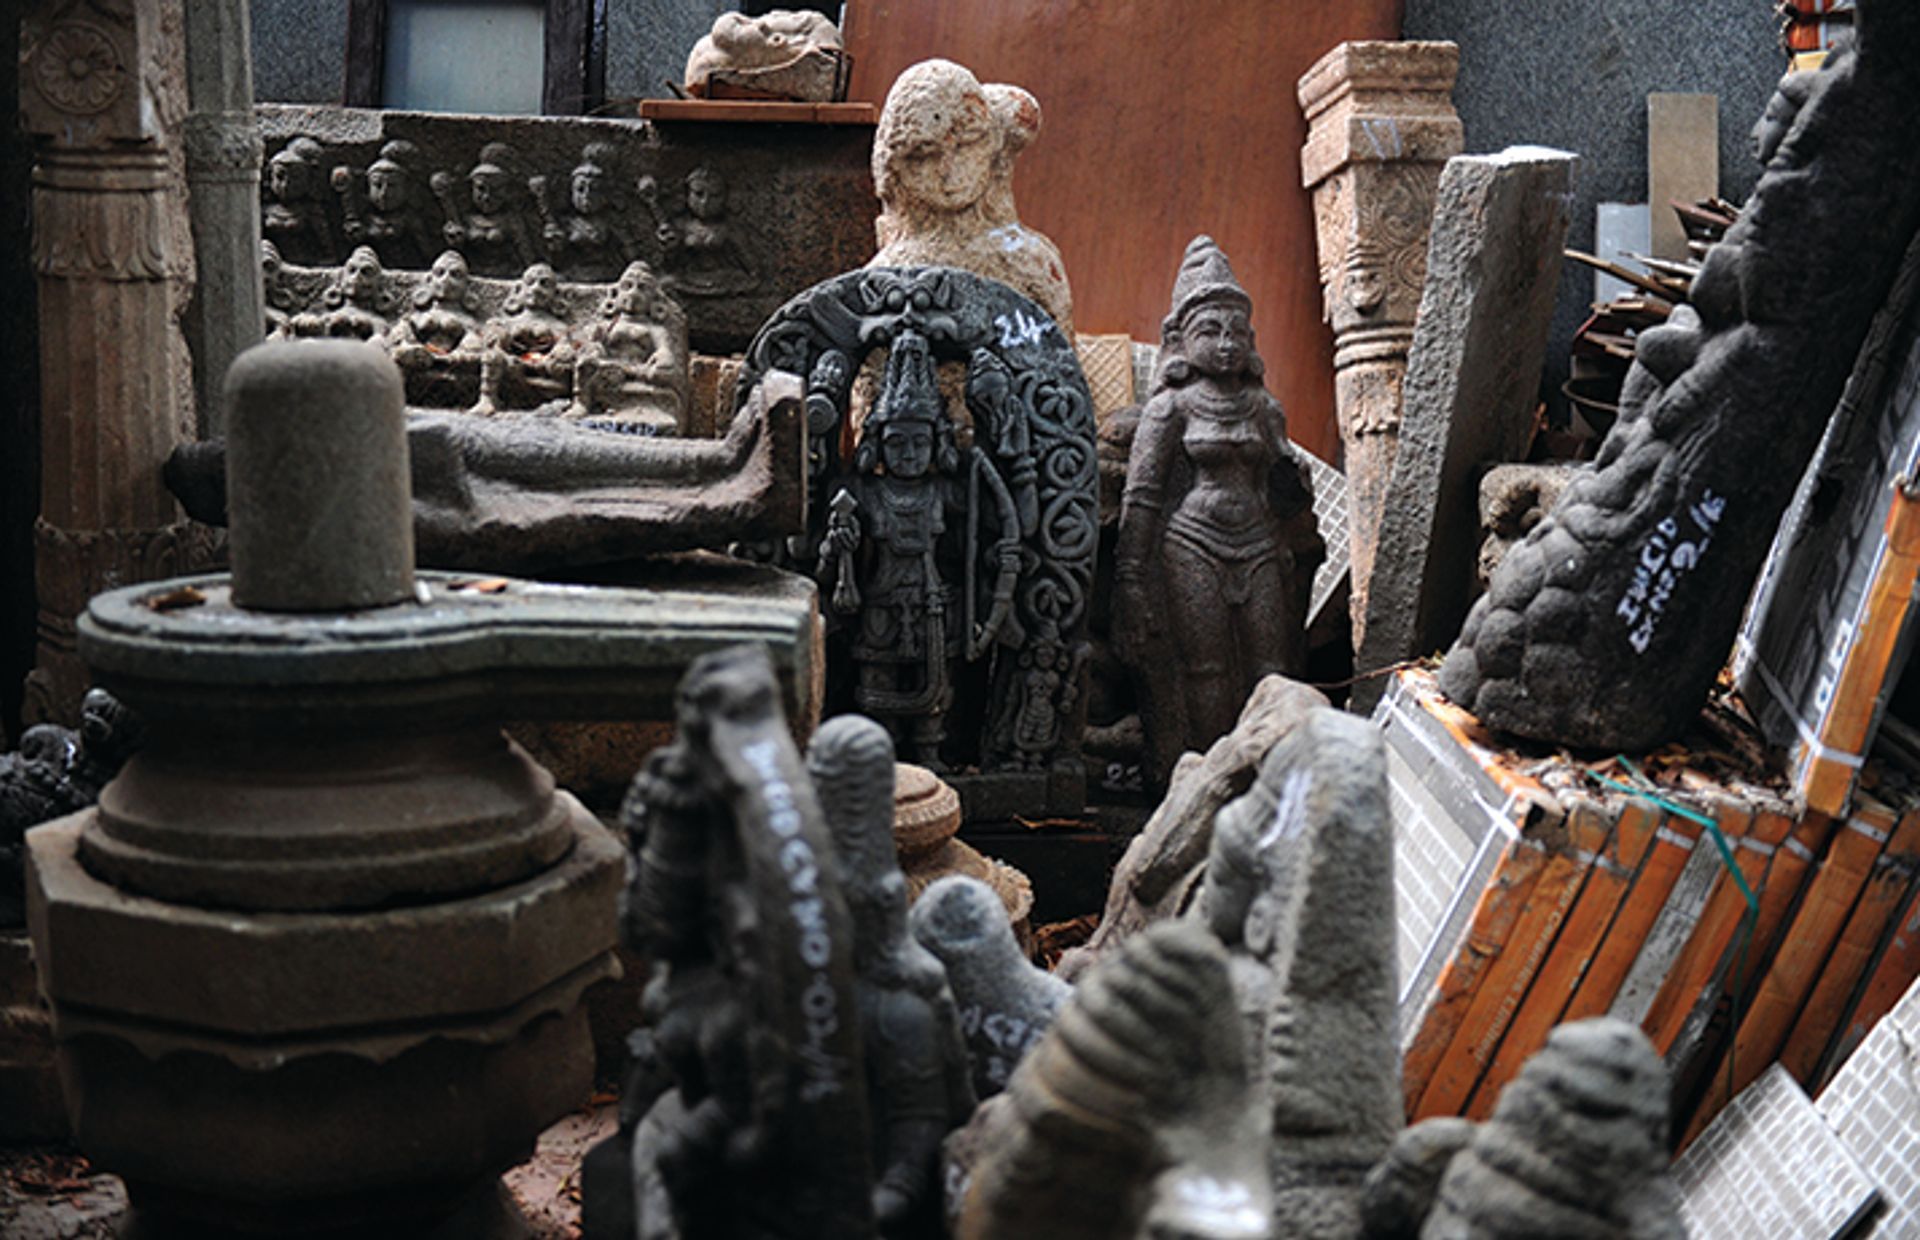 כמה ממאות חפצי אמנות שהתגלו אצל סוחר אמנות שמאמינים כי בזז אותם ממקדשים הינדיים

ארון סנקר / AFP באמצעות Getty Images